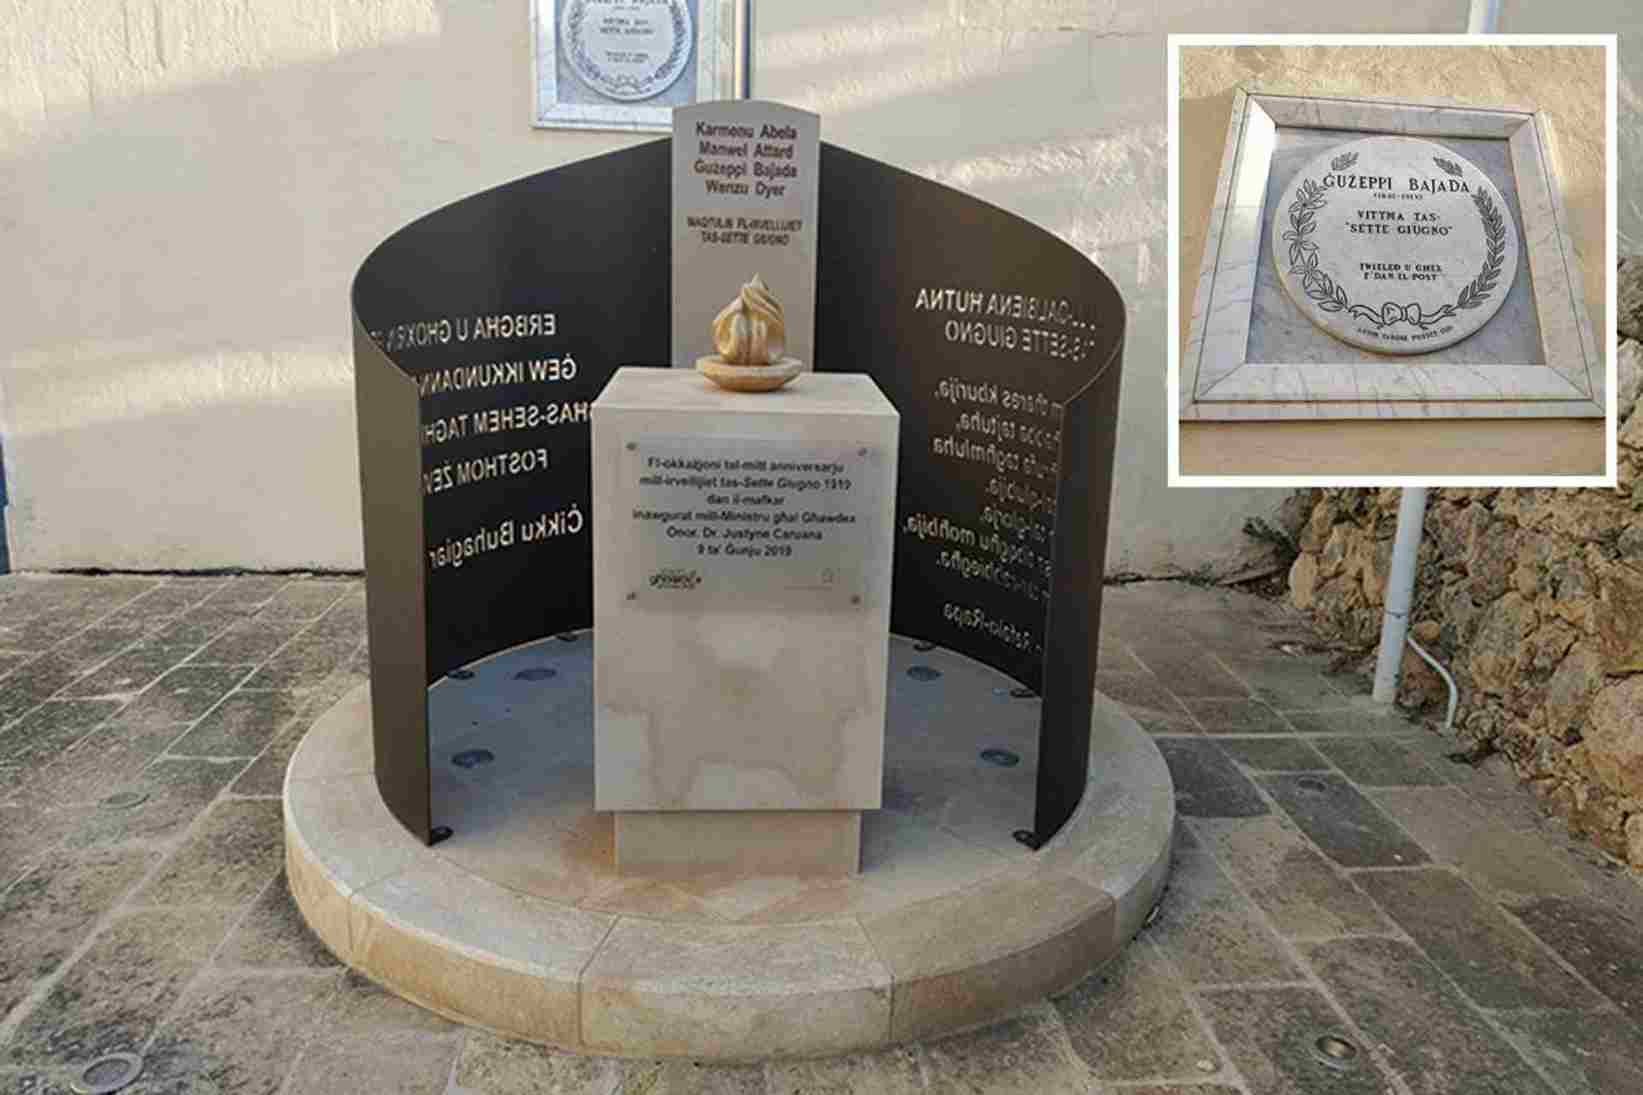 Sette Giugno monument in Gozo